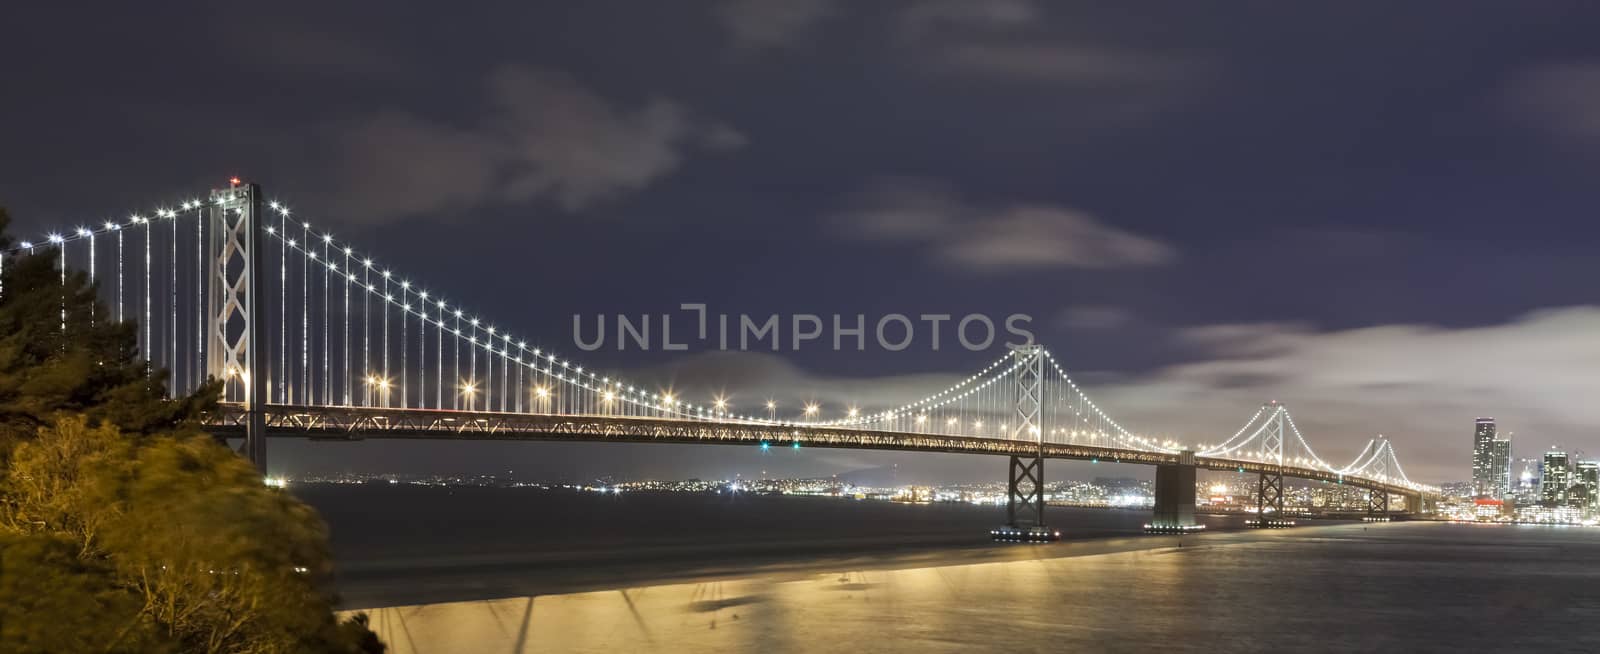 San Francisco Bay bridge in the nigt